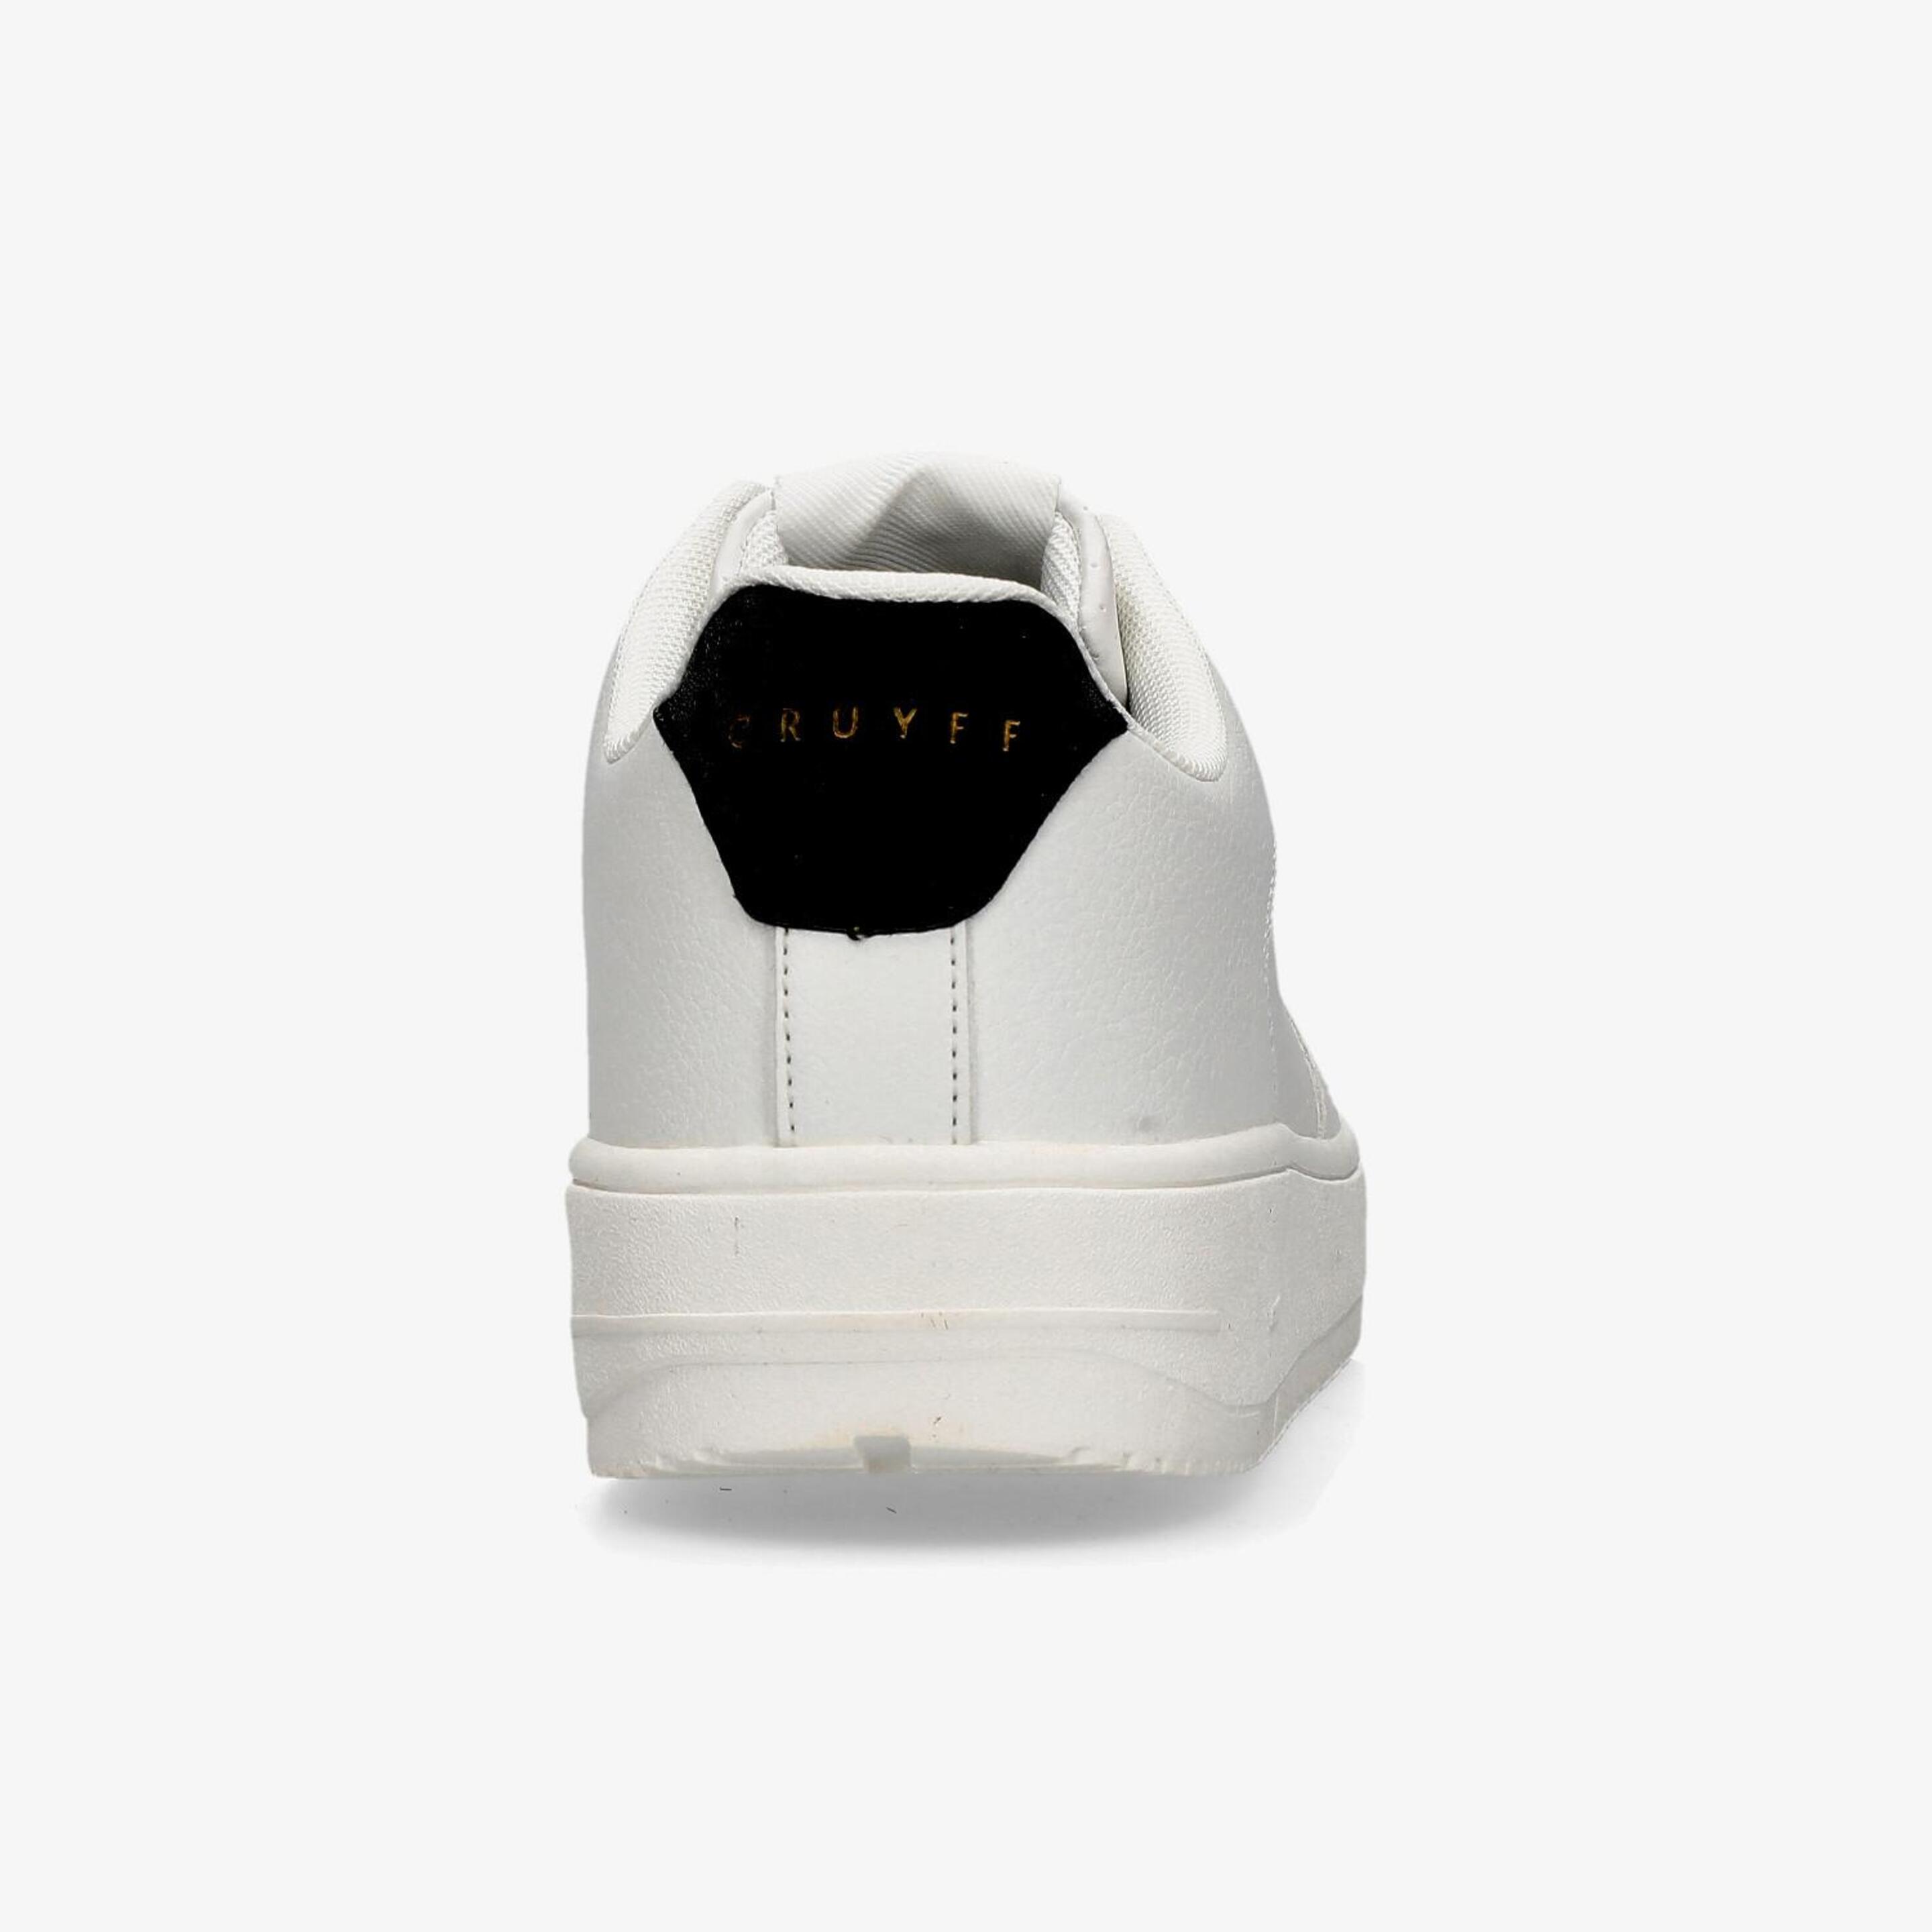 Cruyff Indoor Royal - Blanco - Zapatillas Mujer